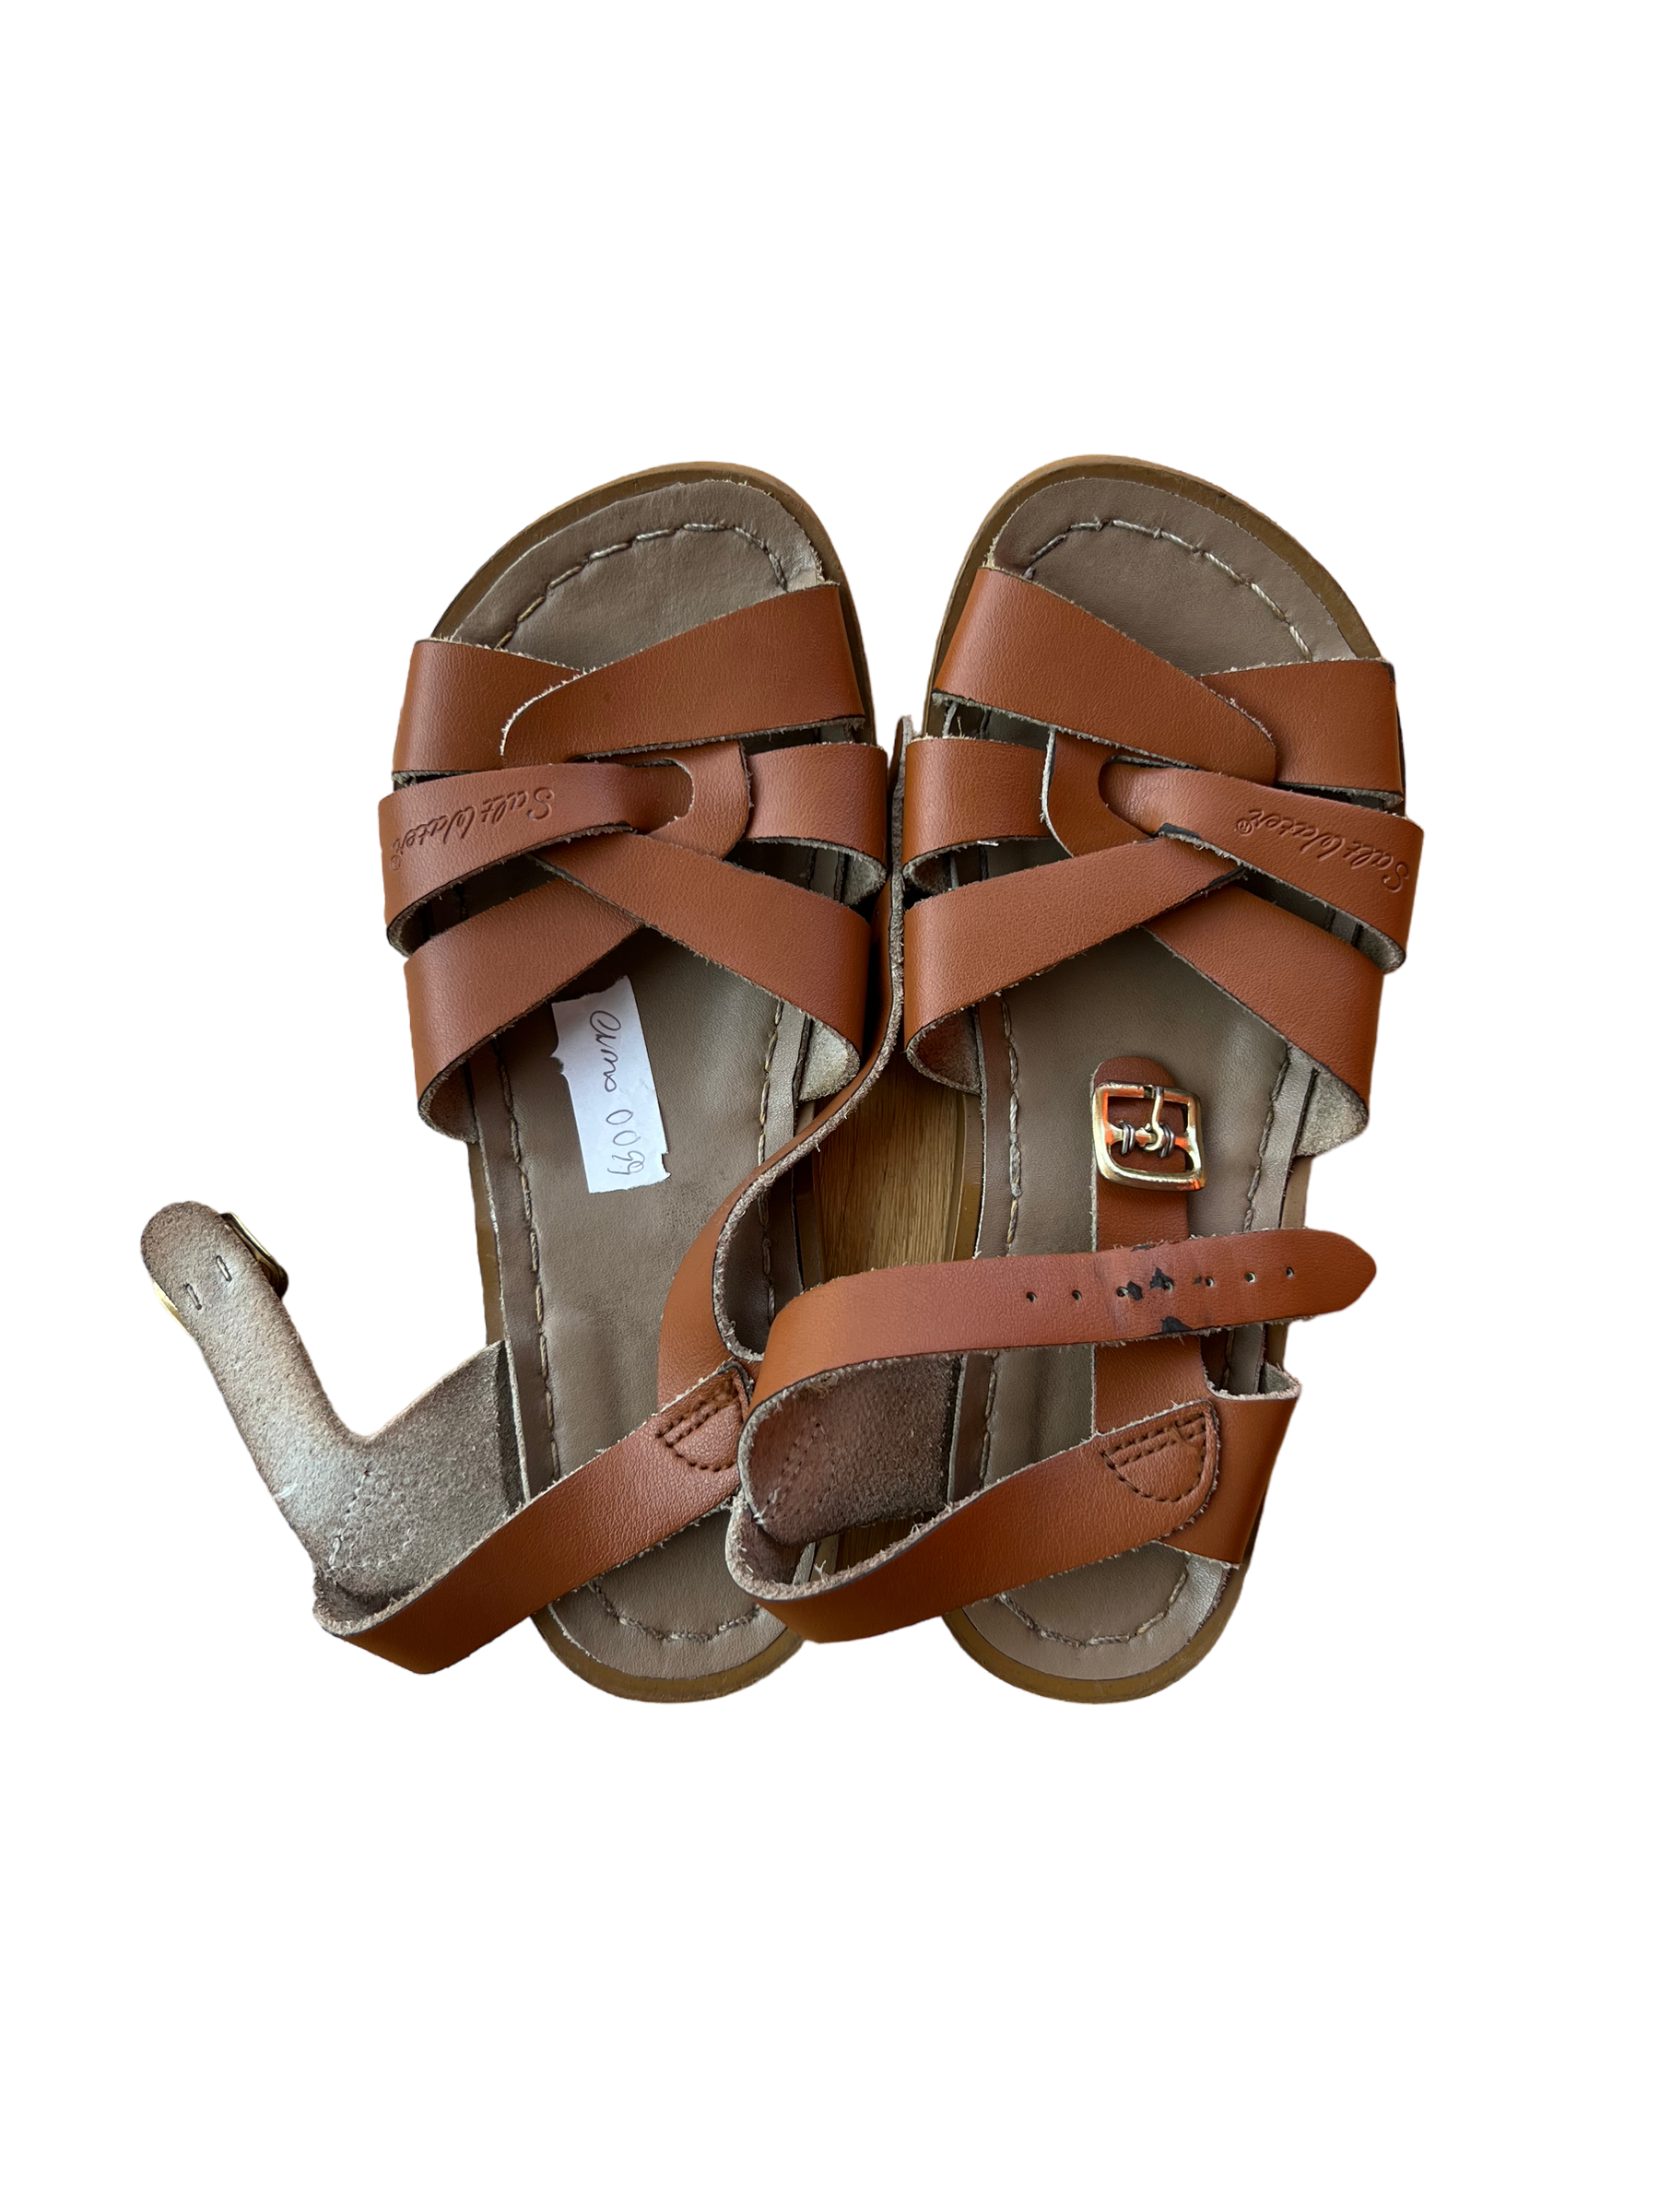 Saltwater sandals